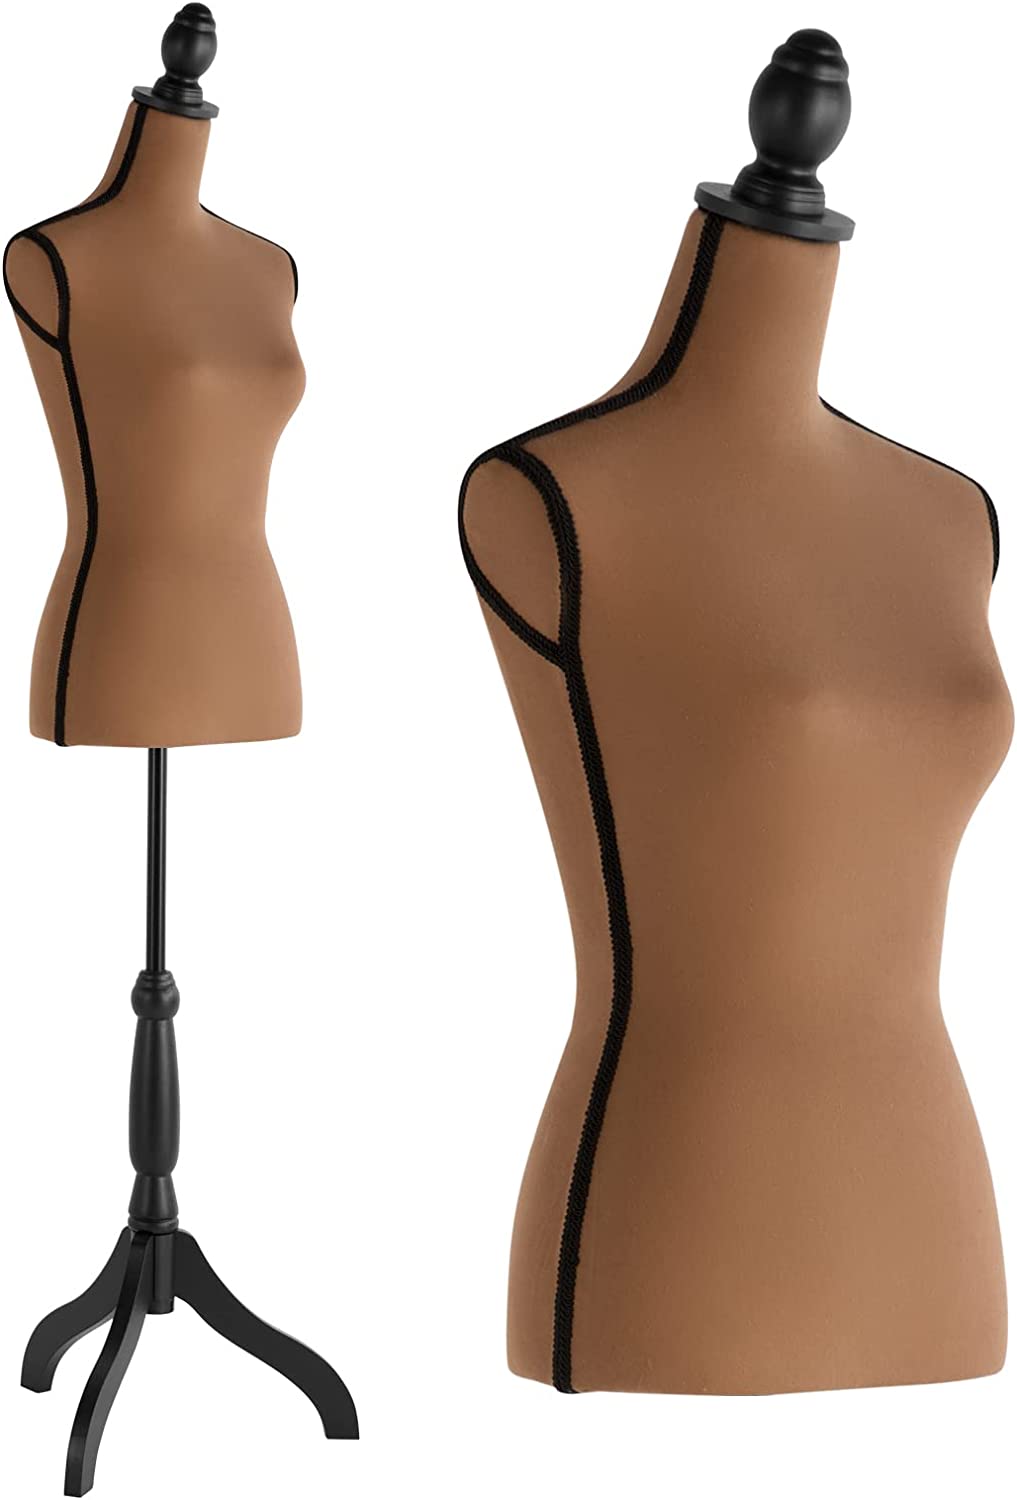 HYNAWIN Cuerpo de maniquí femenino, forma de vestido de chocolate con soporte, altura de 52 '' a 67 